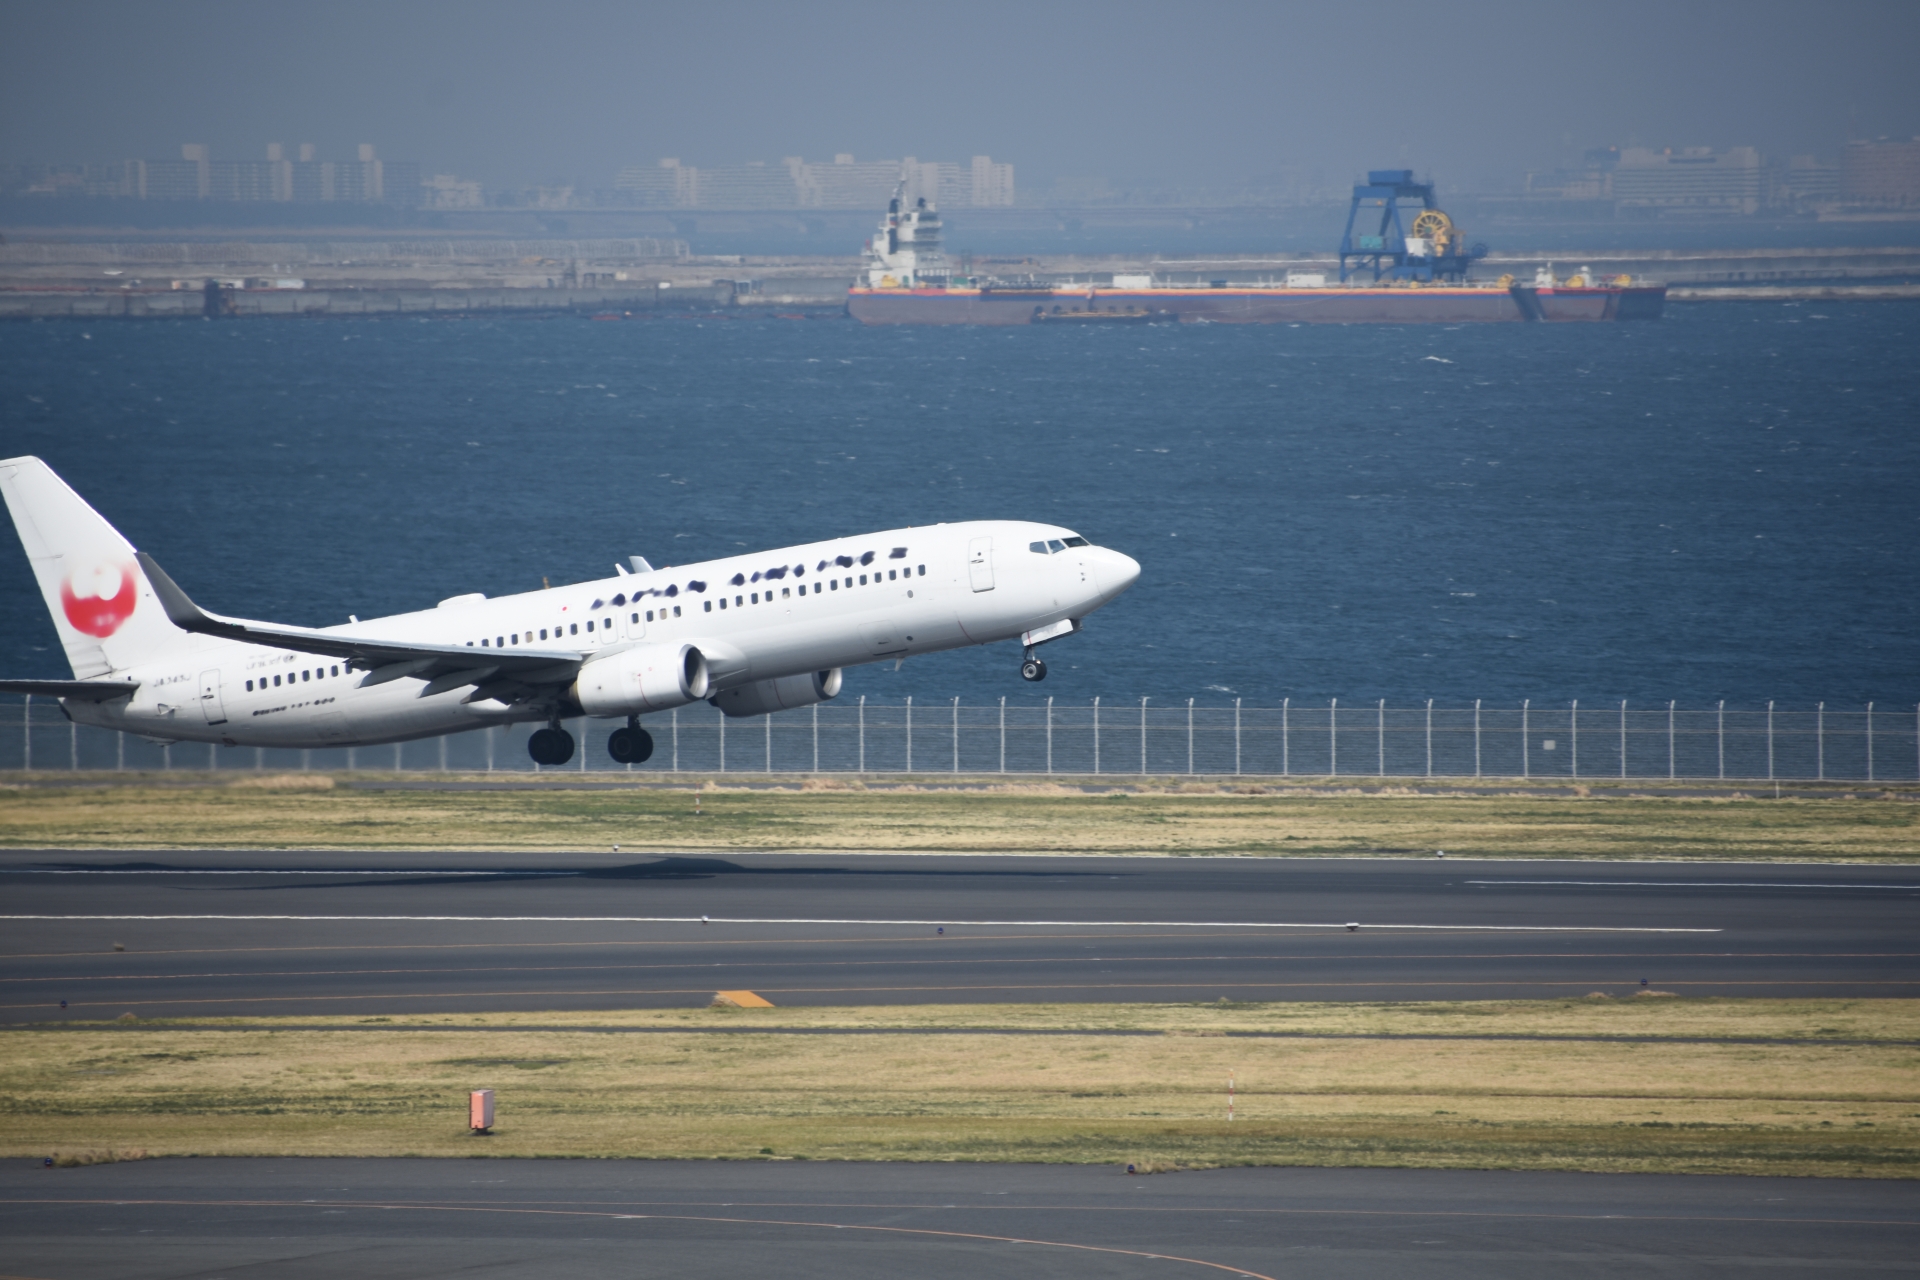 羽田空港を離陸する飛行機の写真です